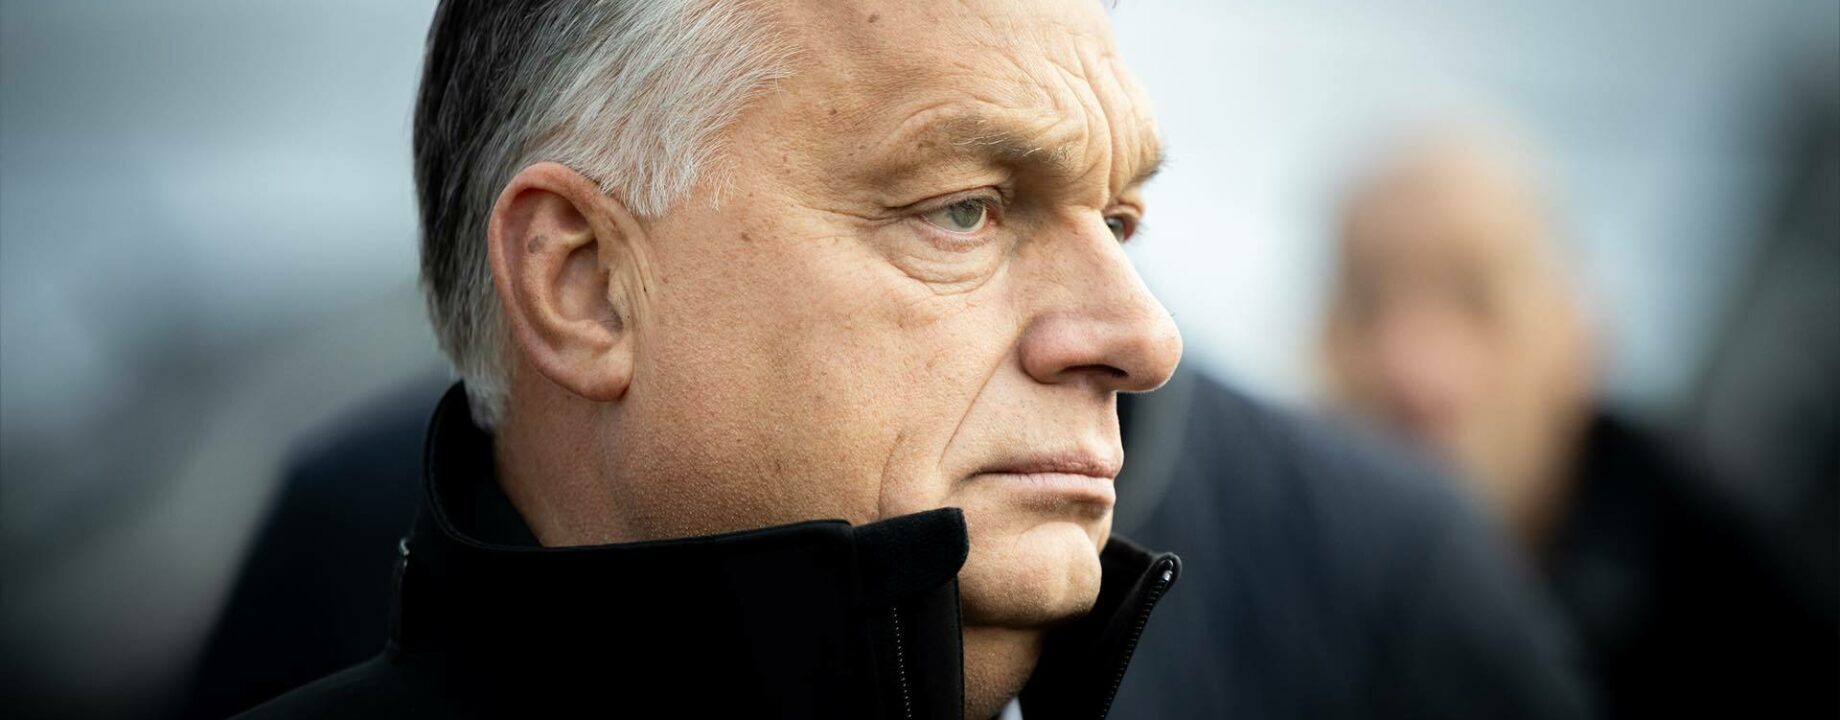 Orbán viktor